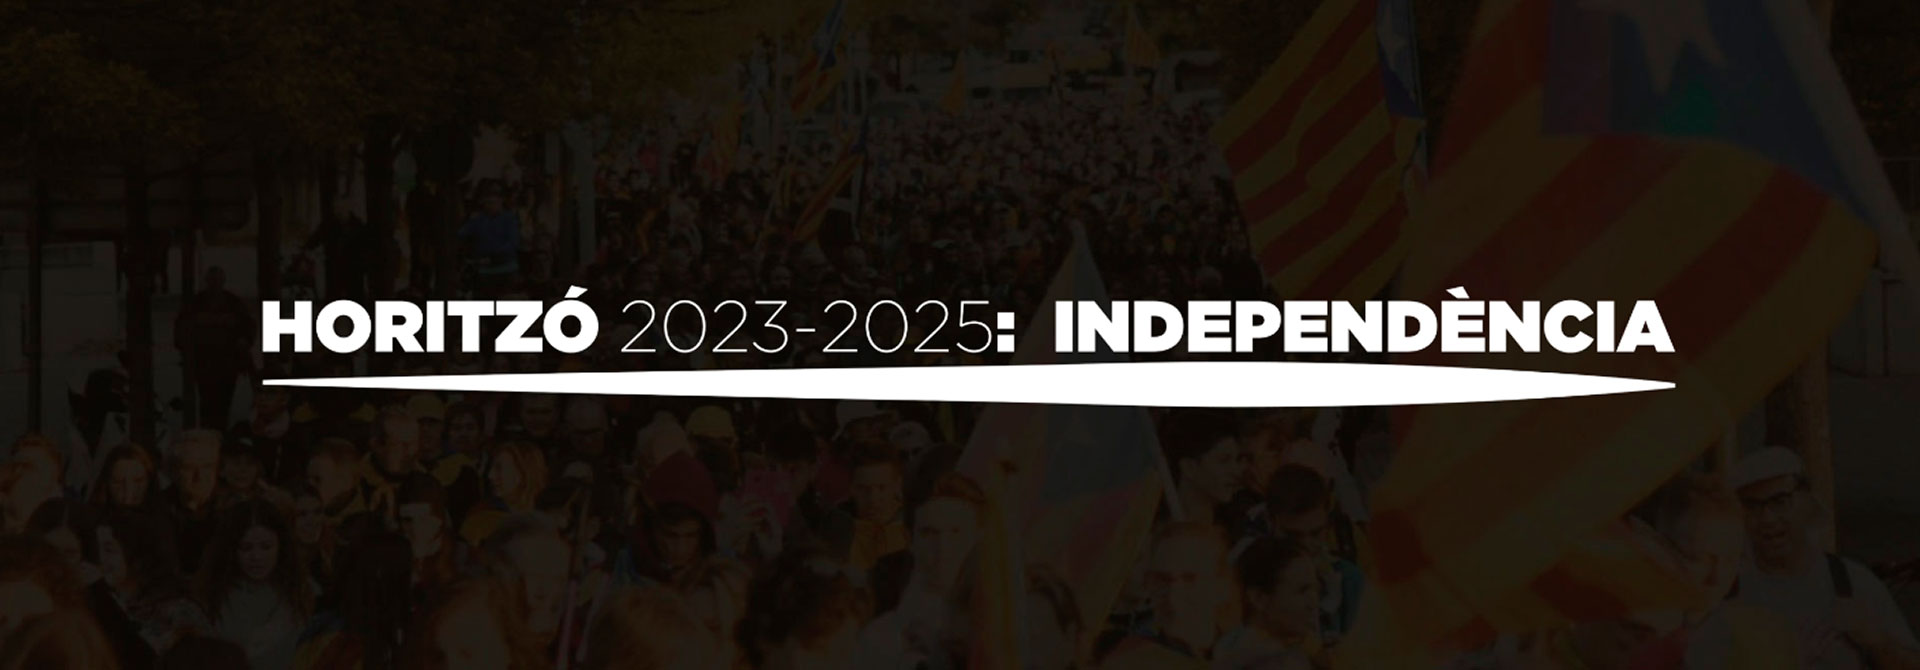 Horitzó 2023-2025 Independencia